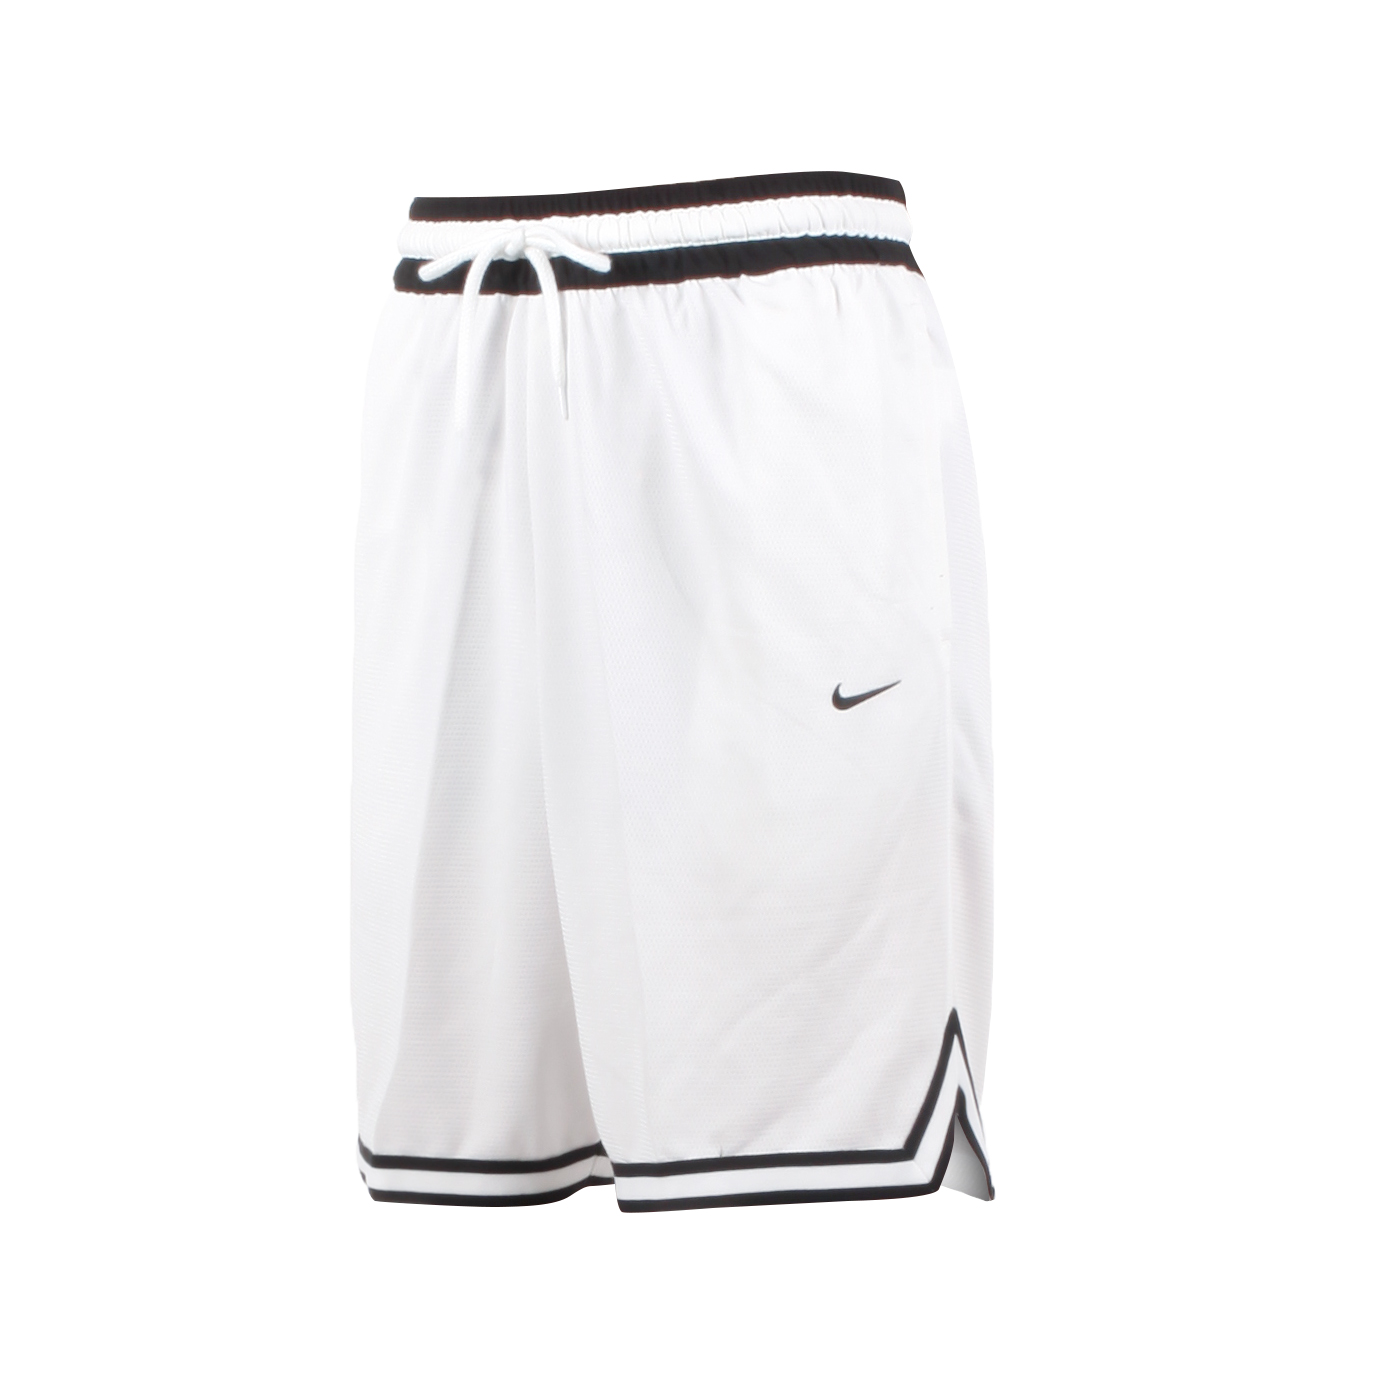 NIKE 男款籃球短褲  DH7161-100 - 白黑